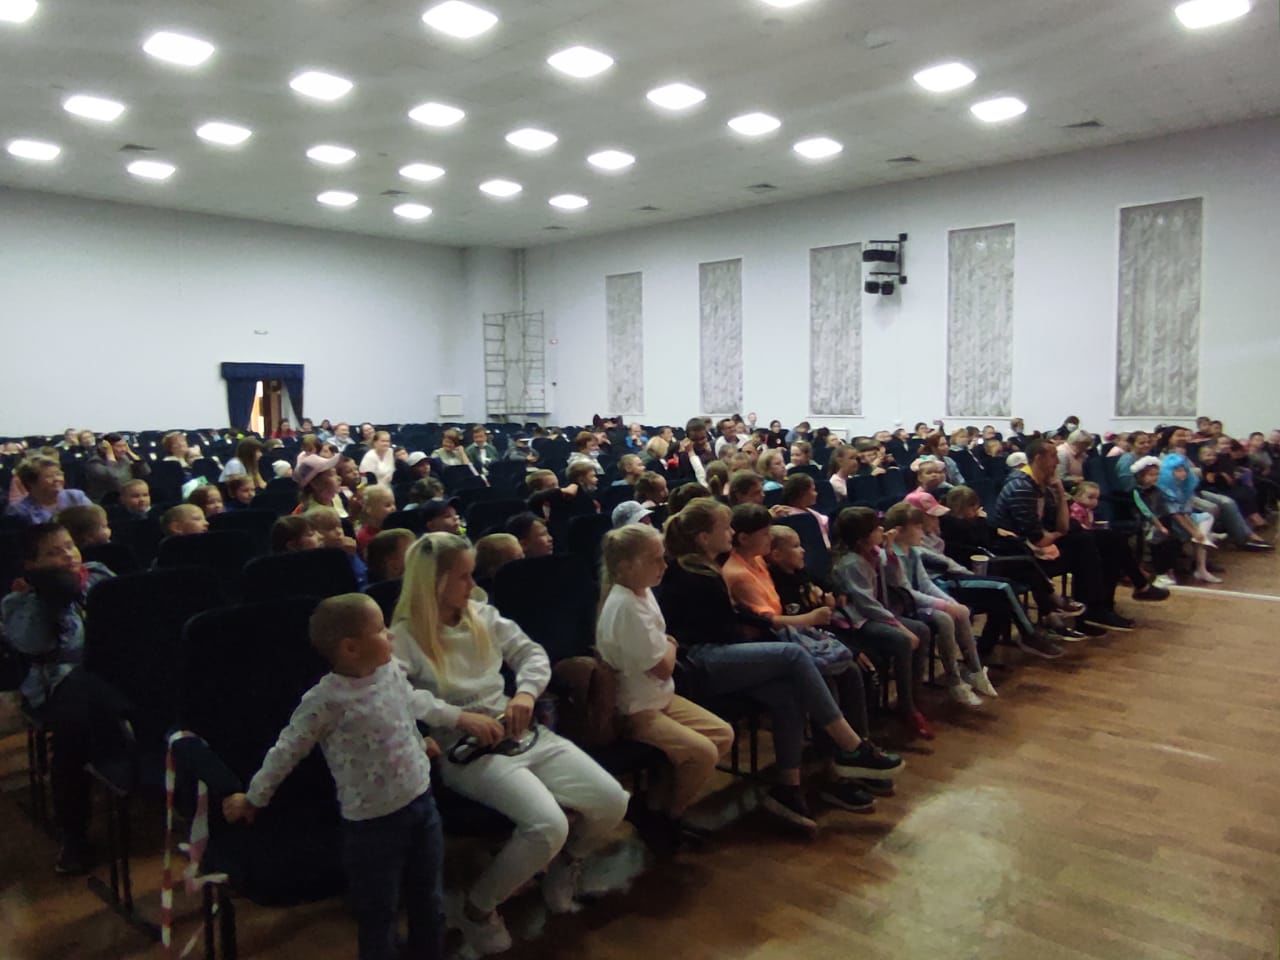 В Нижневязовском ДК прошел настоящий праздник для детей - театрально-игровое представление "Верните каникулы"